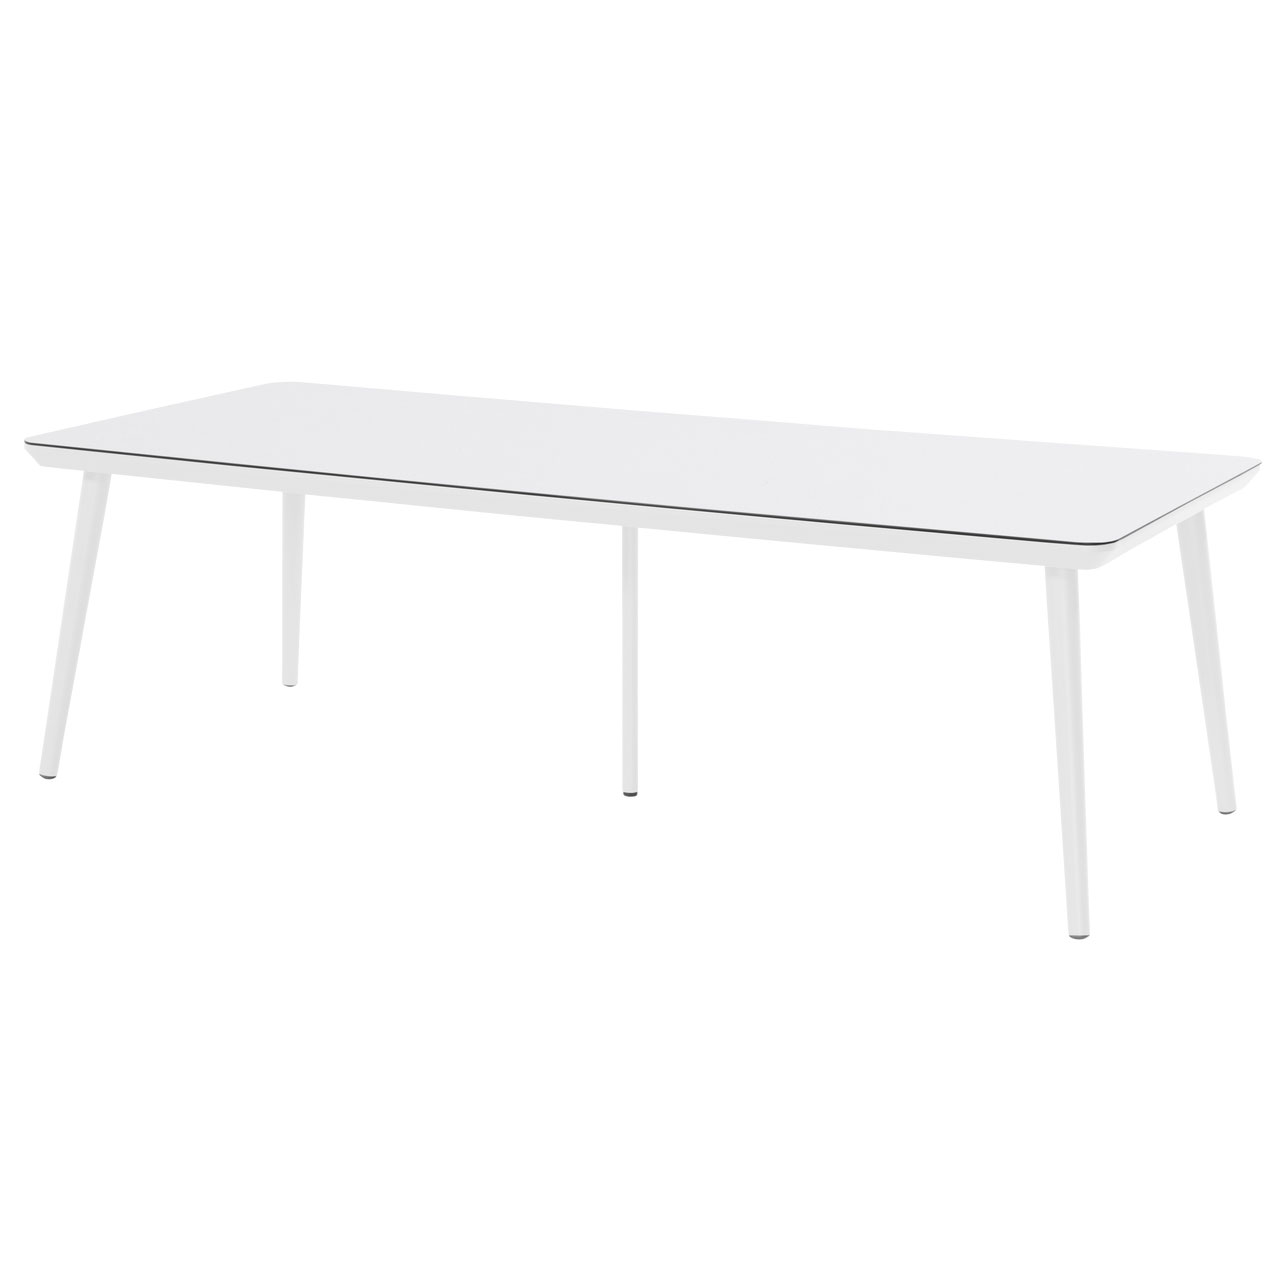 Hartman Sophie studio tafel white HPL-royal white 240x100cm